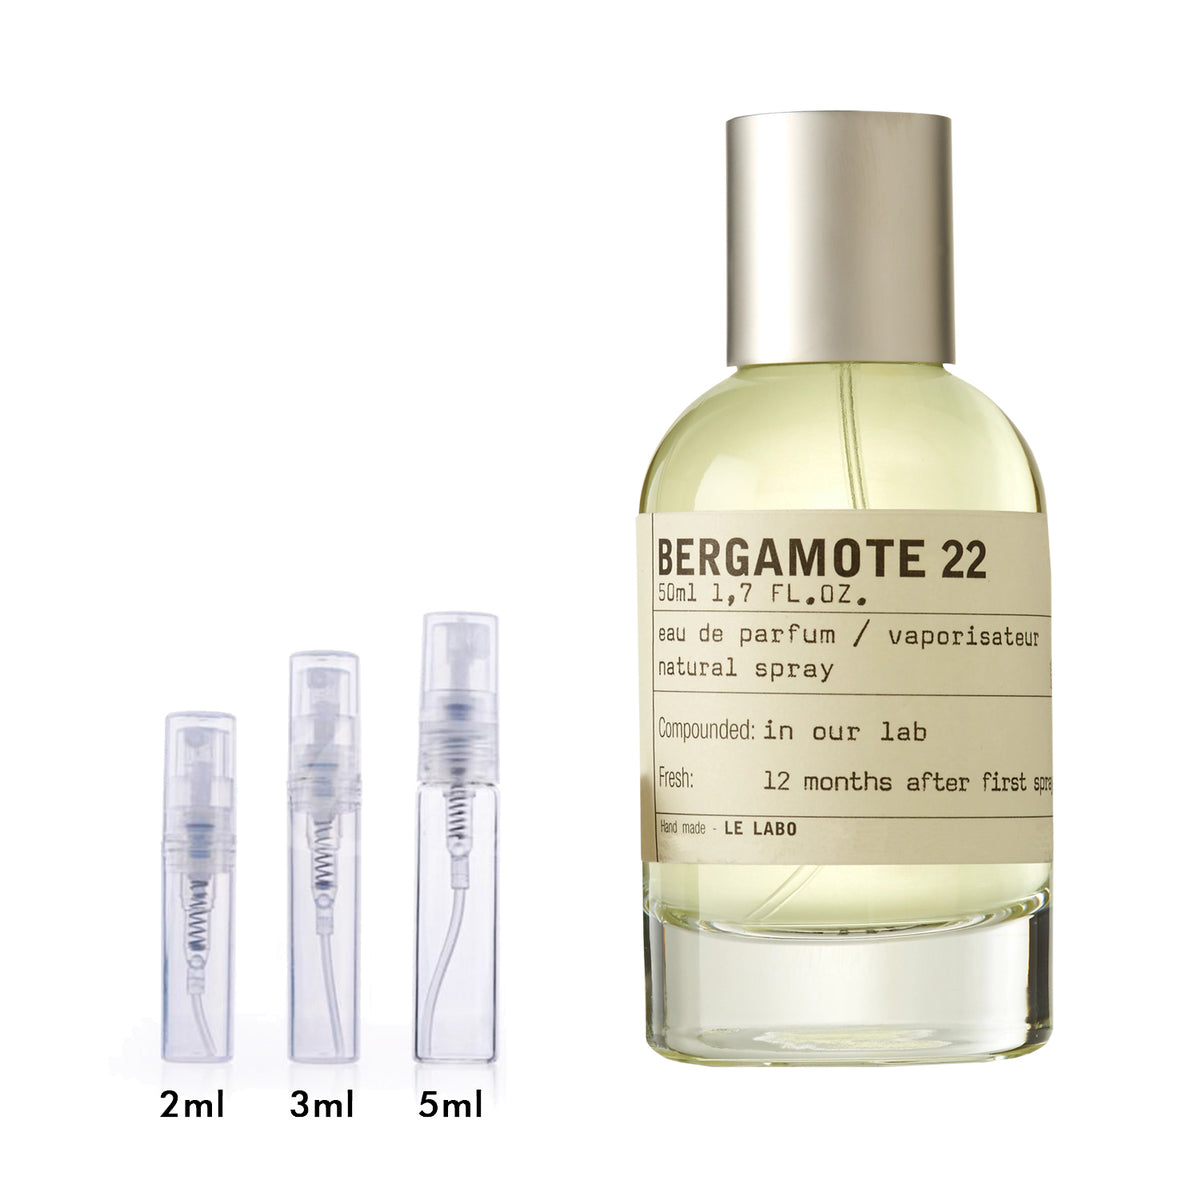 Le 22 Eau de Parfum – DecantX Perfume & Cologne Decant Fragrance Samples